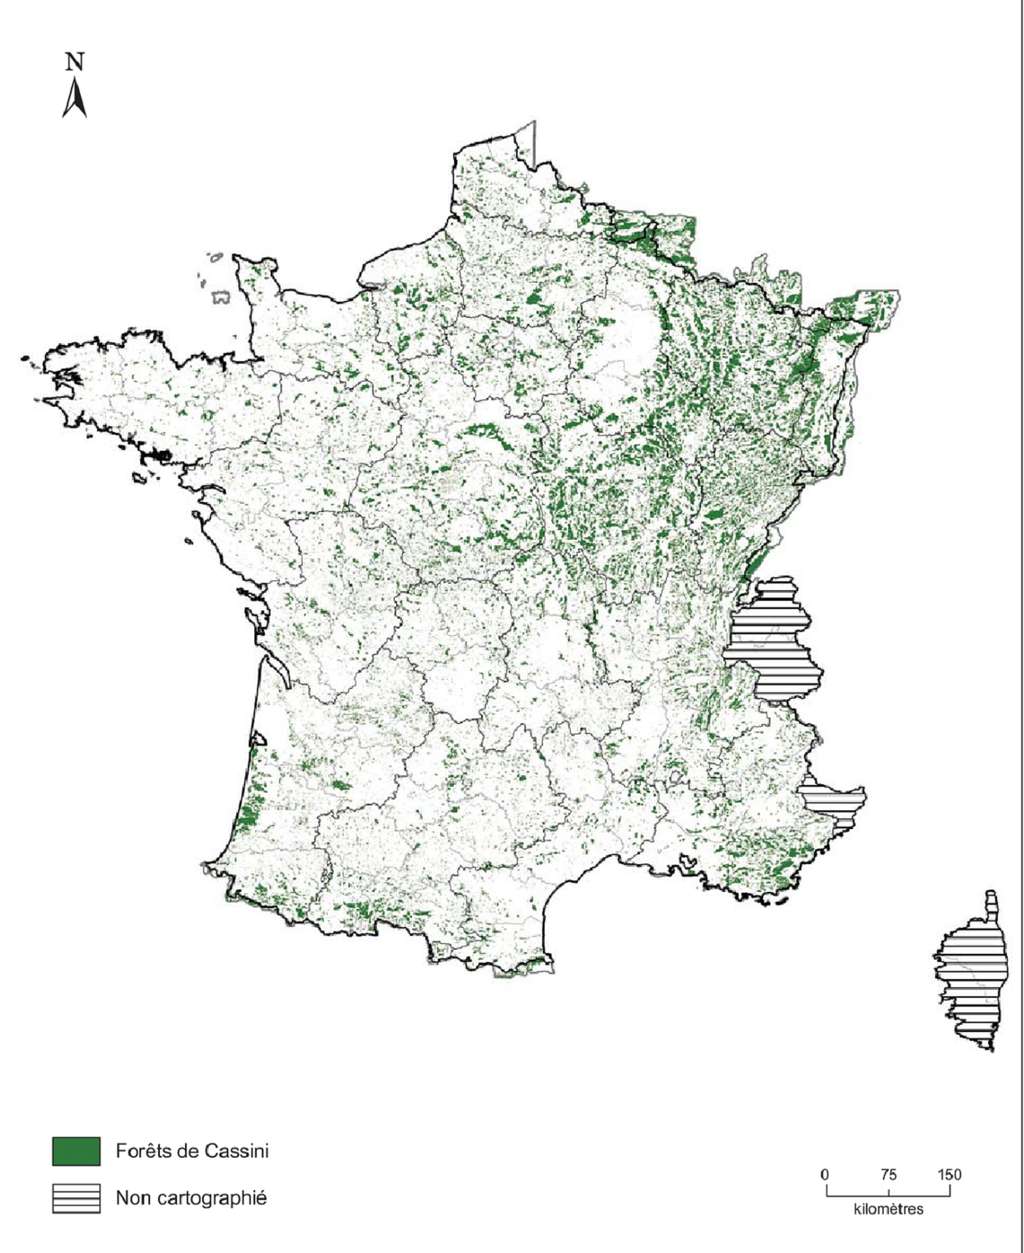 Représentation des forêts répertoriées sur les cartes de Cassini vers 1770 (densité forestière importante sur le quart nord-est du pays). © WWF, INRAP 